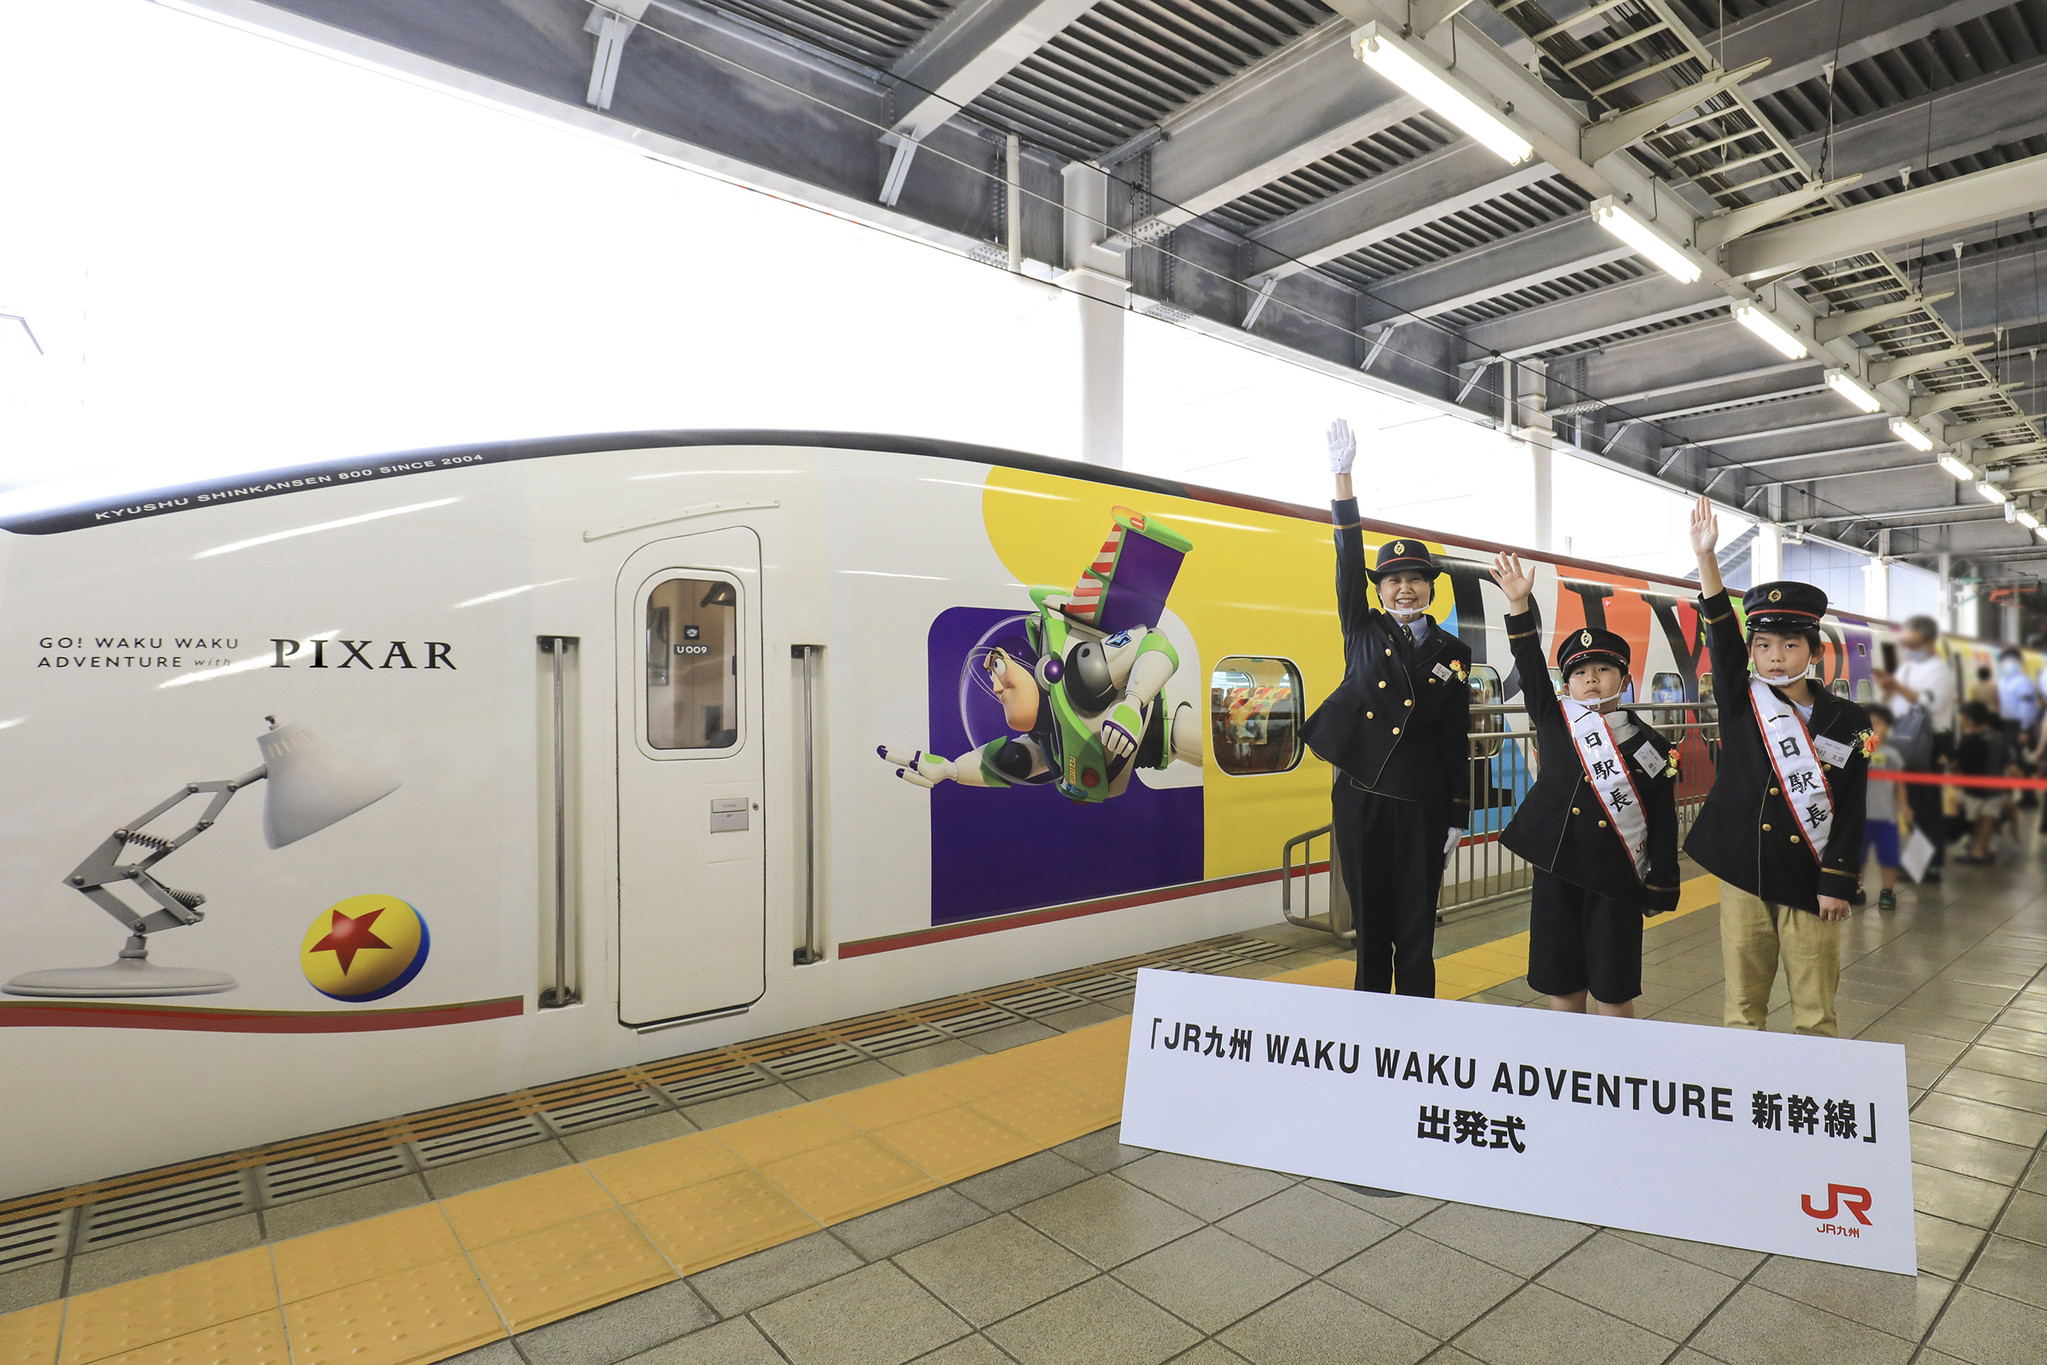 ピクサーの仲間たちと 列車に乗って九州を冒険しよう Jr九州 Waku Waku Adventure 新幹線 運行開始 九州 旅客鉄道株式会社のプレスリリース